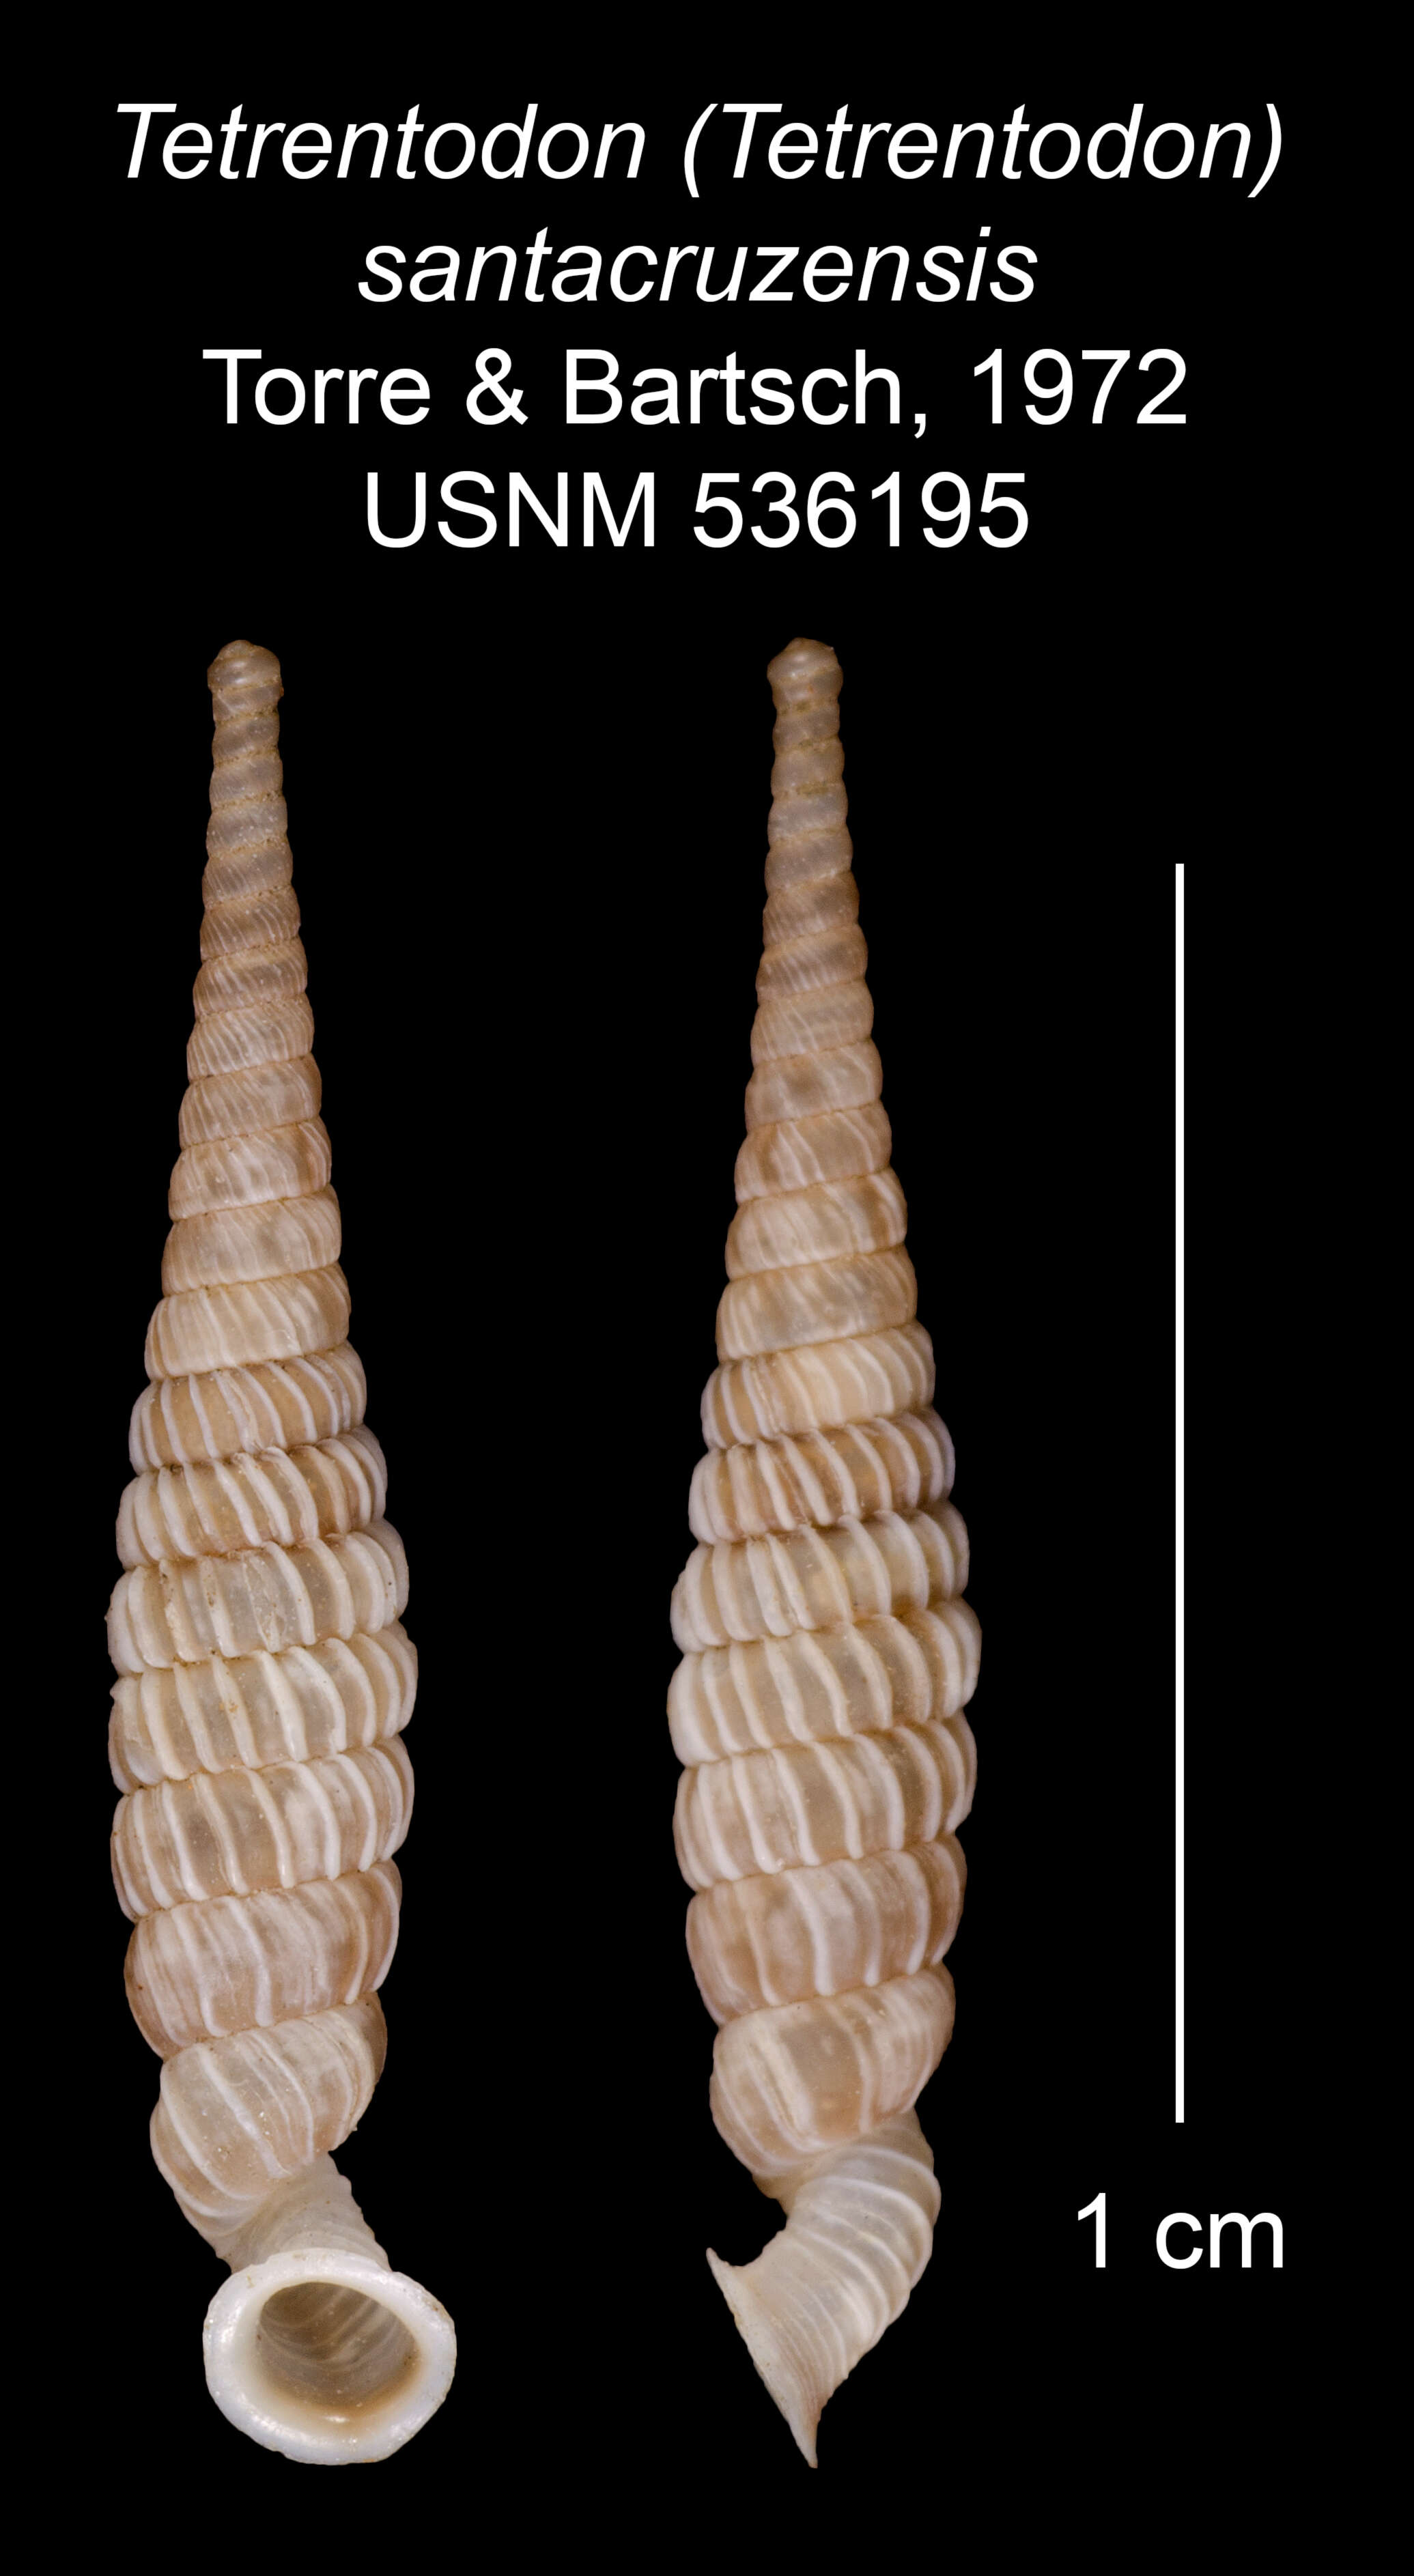 Image of Tetrentodon santacruzensis C. de la Torre & Bartsch 1972